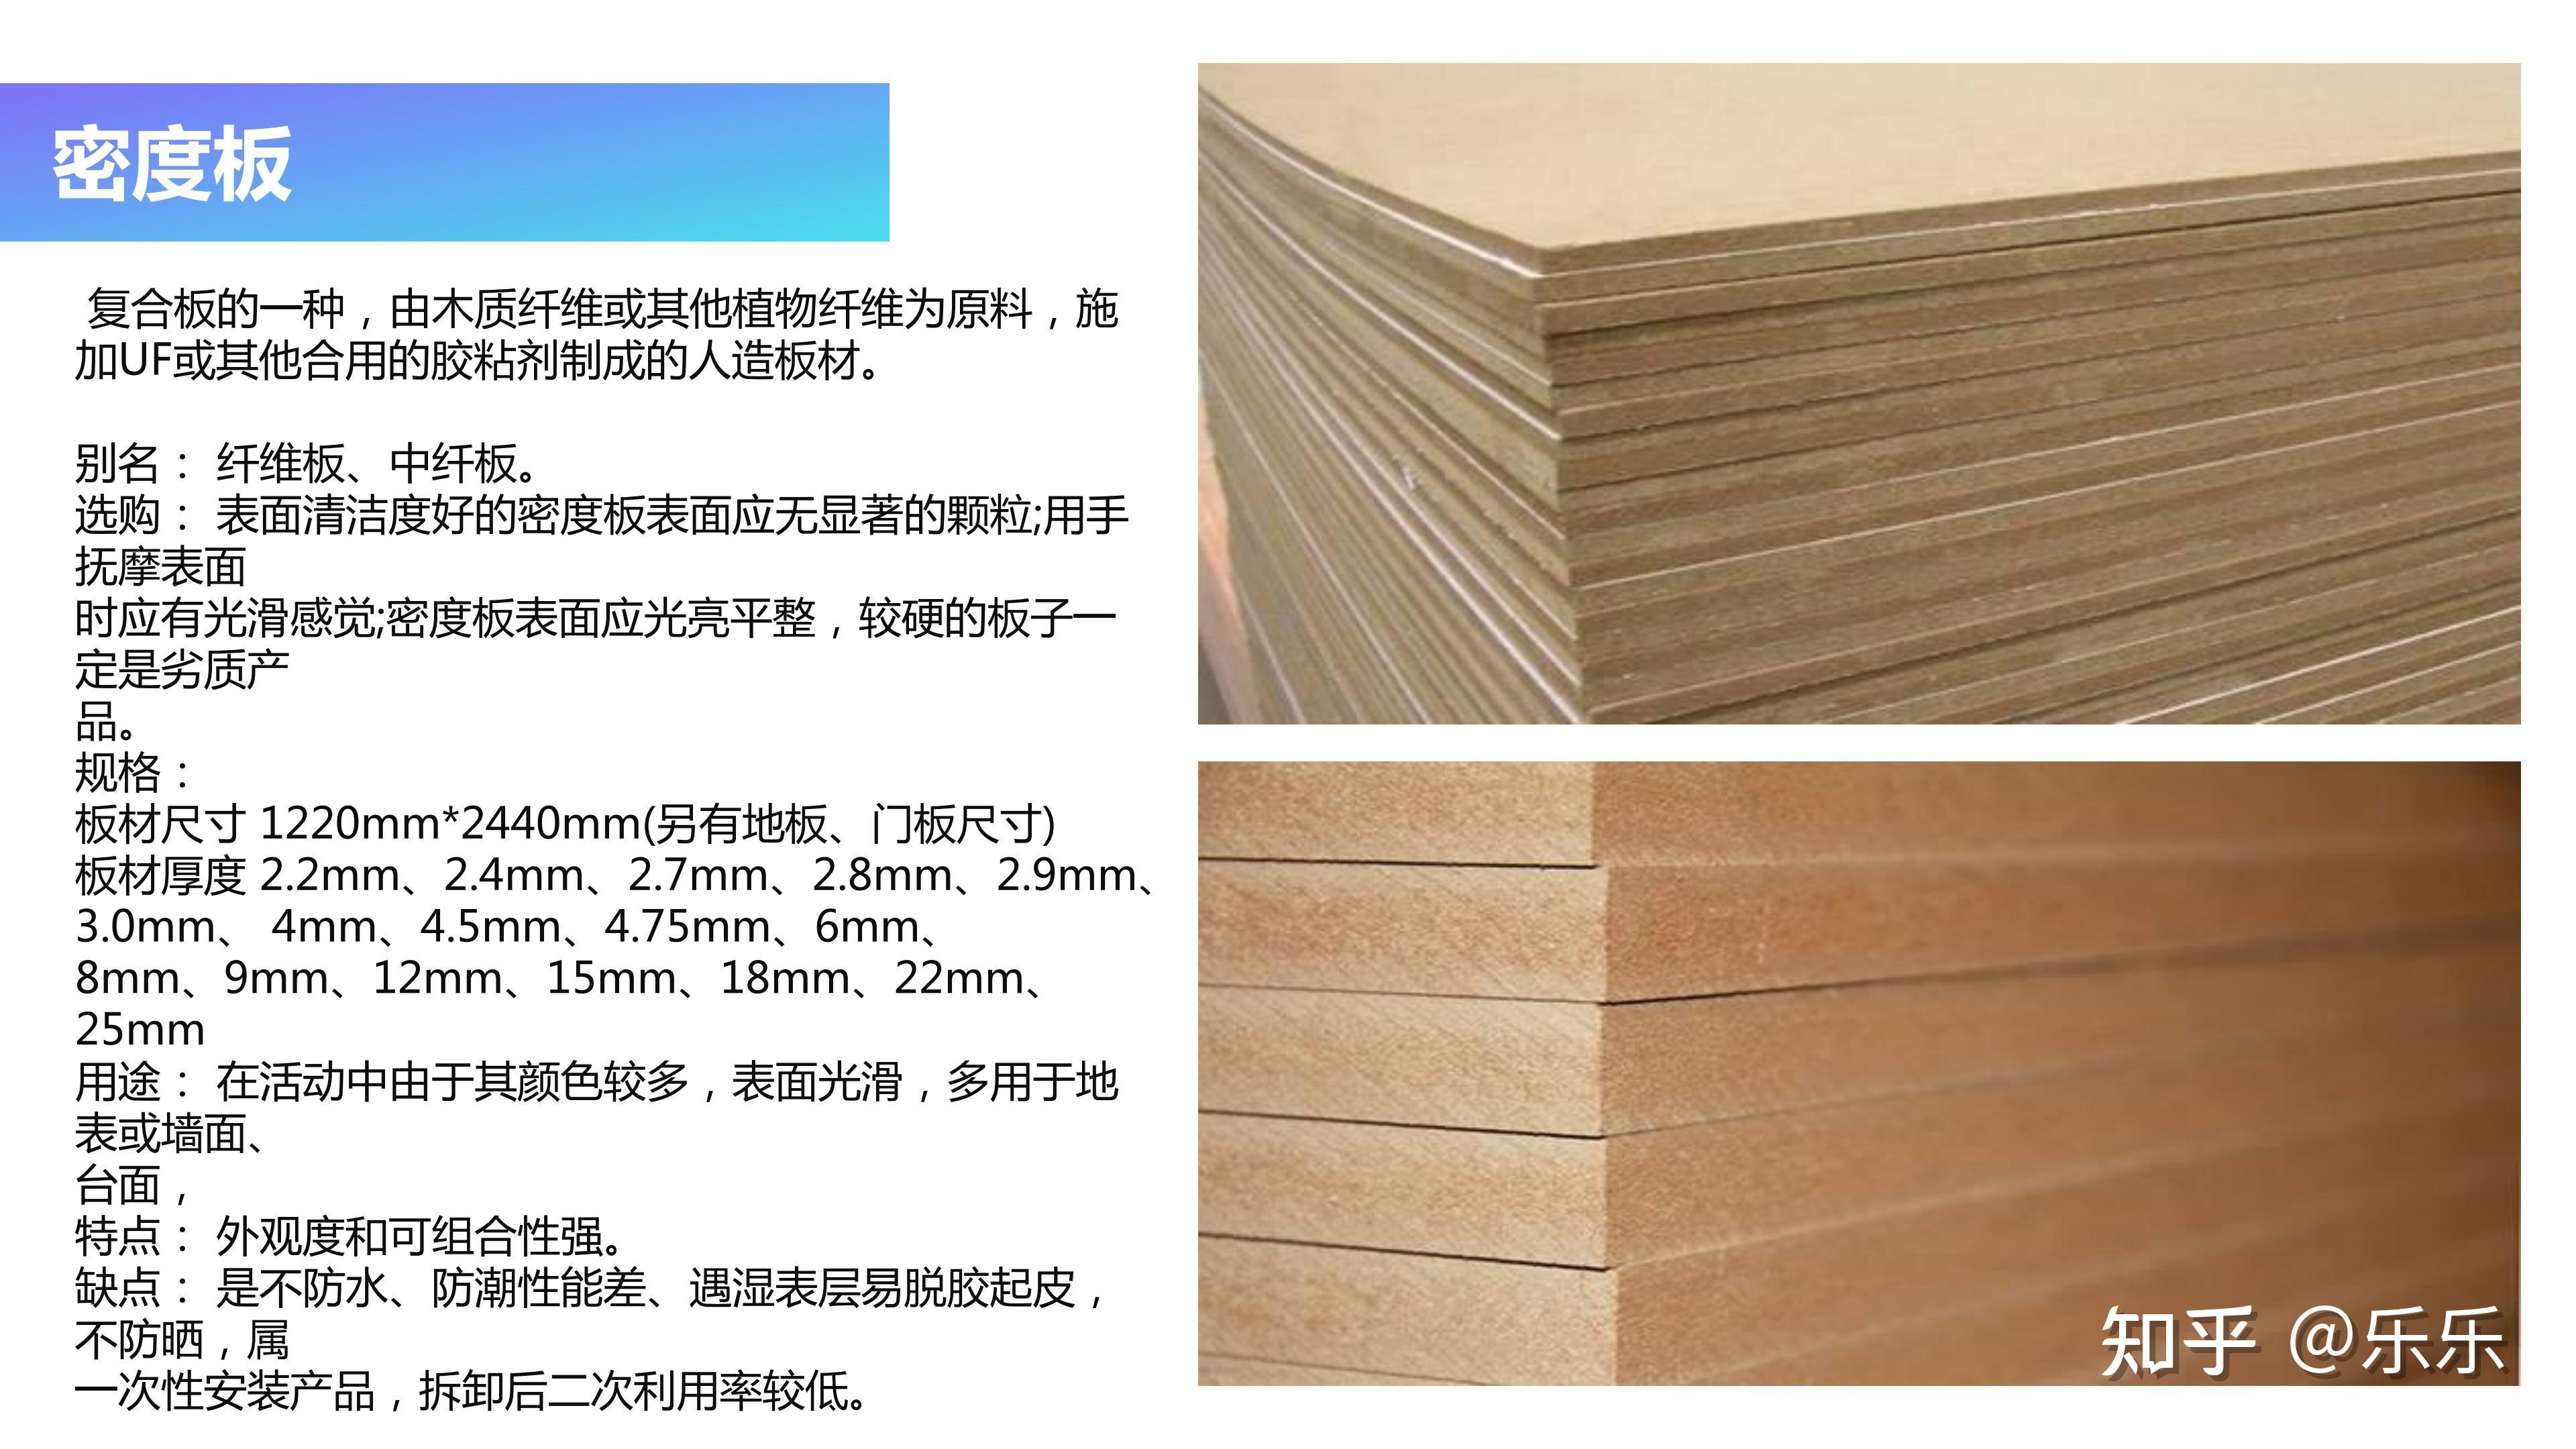 基材刨花板刨花板也叫颗粒板,是将木材或其他木质纤维切削成一定规格